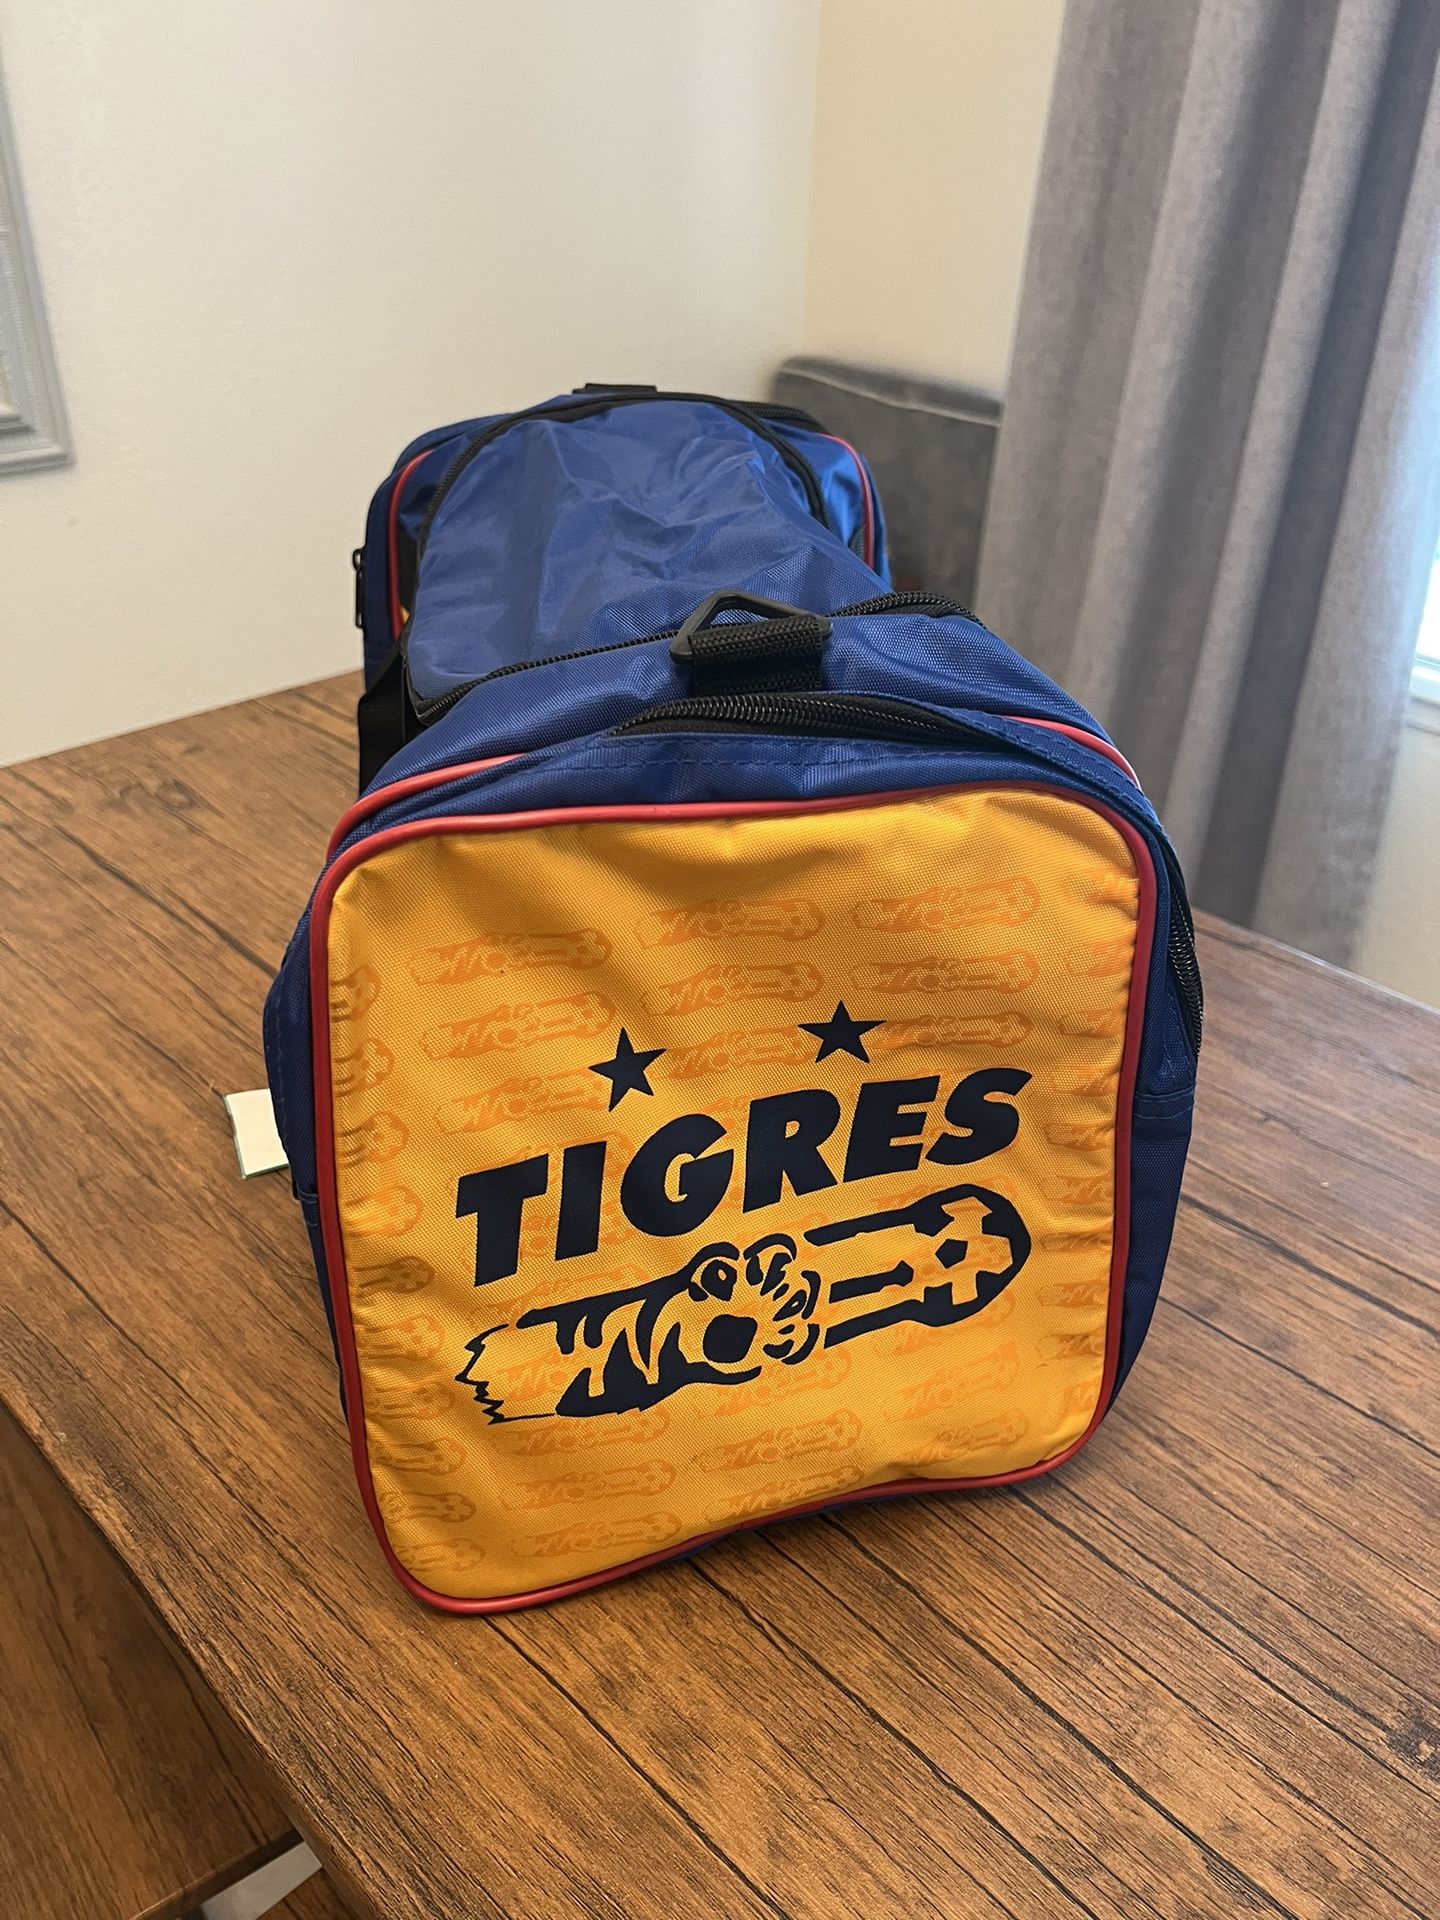 Tigres UANL Duffle Bag $35Or OBO